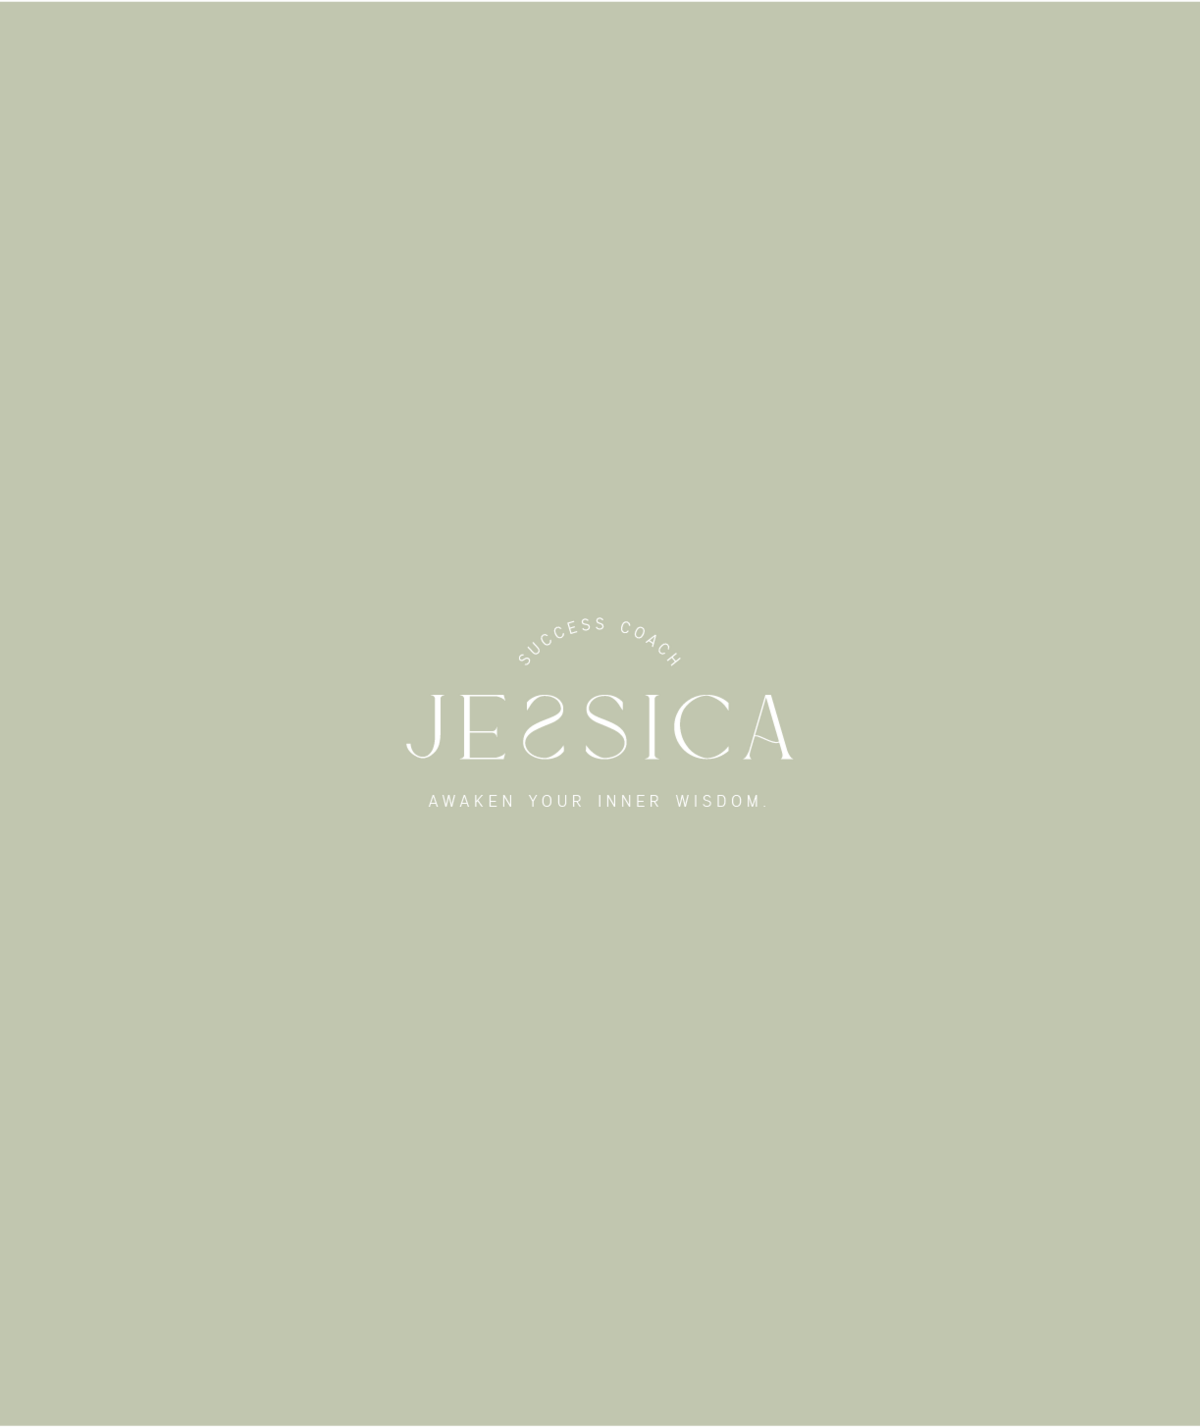 jessica-buongiorno-portfolio-worth-it-approach-brand-design-18